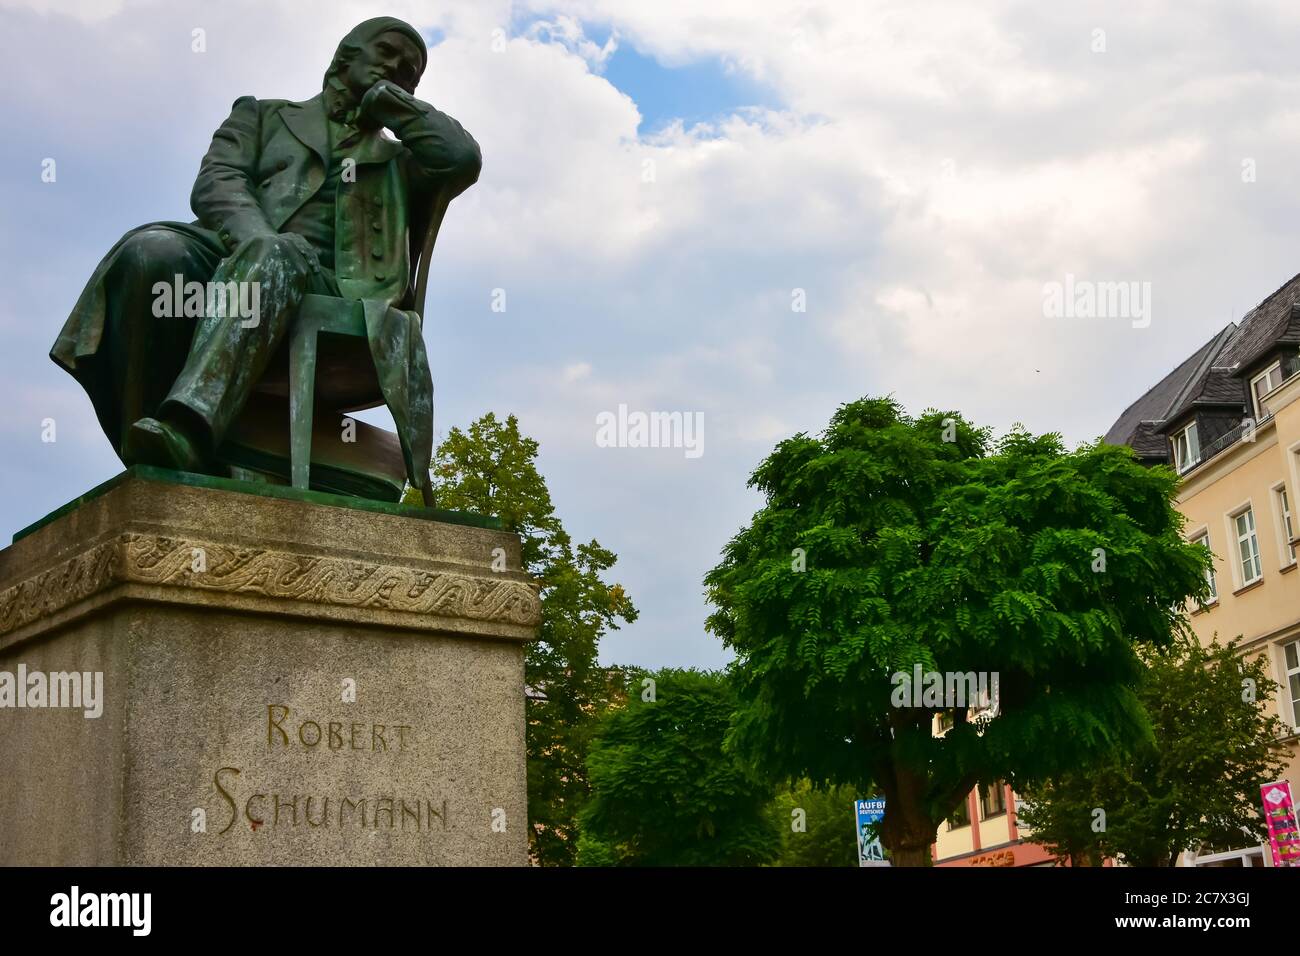 Statue de Robert Schumann, compositeur allemand, à Zwickau, en Allemagne Banque D'Images